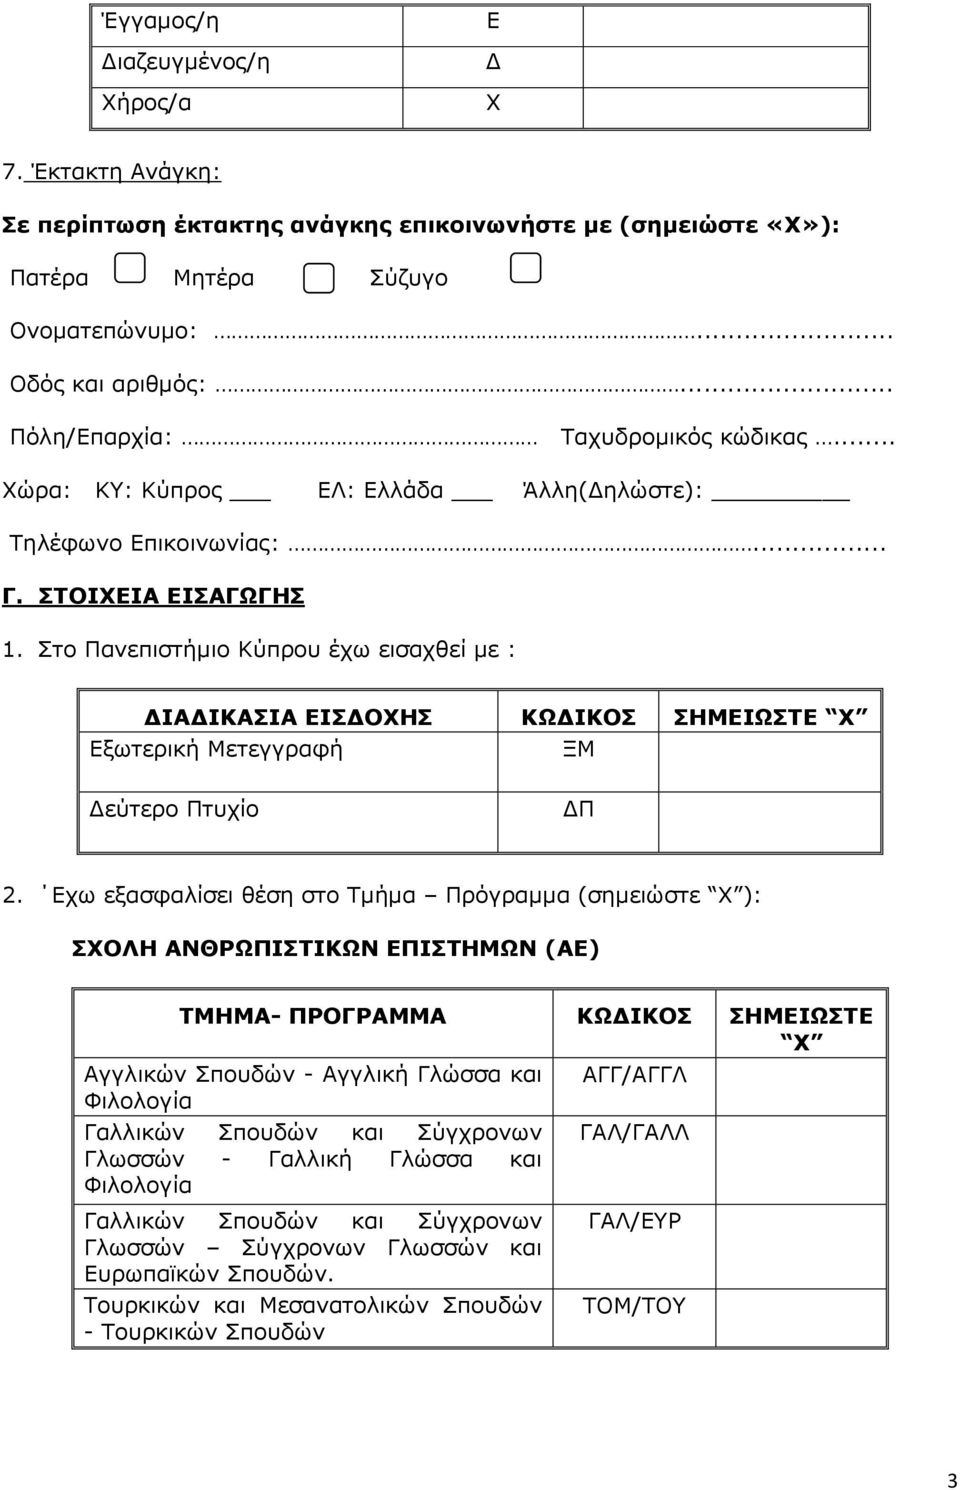 Στο Πανεπιστήμιο Κύπρου έχω εισαχθεί με : ΔΙΑΔΙΚΑΣΙΑ ΕΙΣΔΟΧΗΣ ΚΩΔΙΚΟΣ ΣΗΜΕΙΩΣΤΕ Εξωτερική Μετεγγραφή ΞΜ Δεύτερο Πτυχίο ΔΠ 2.